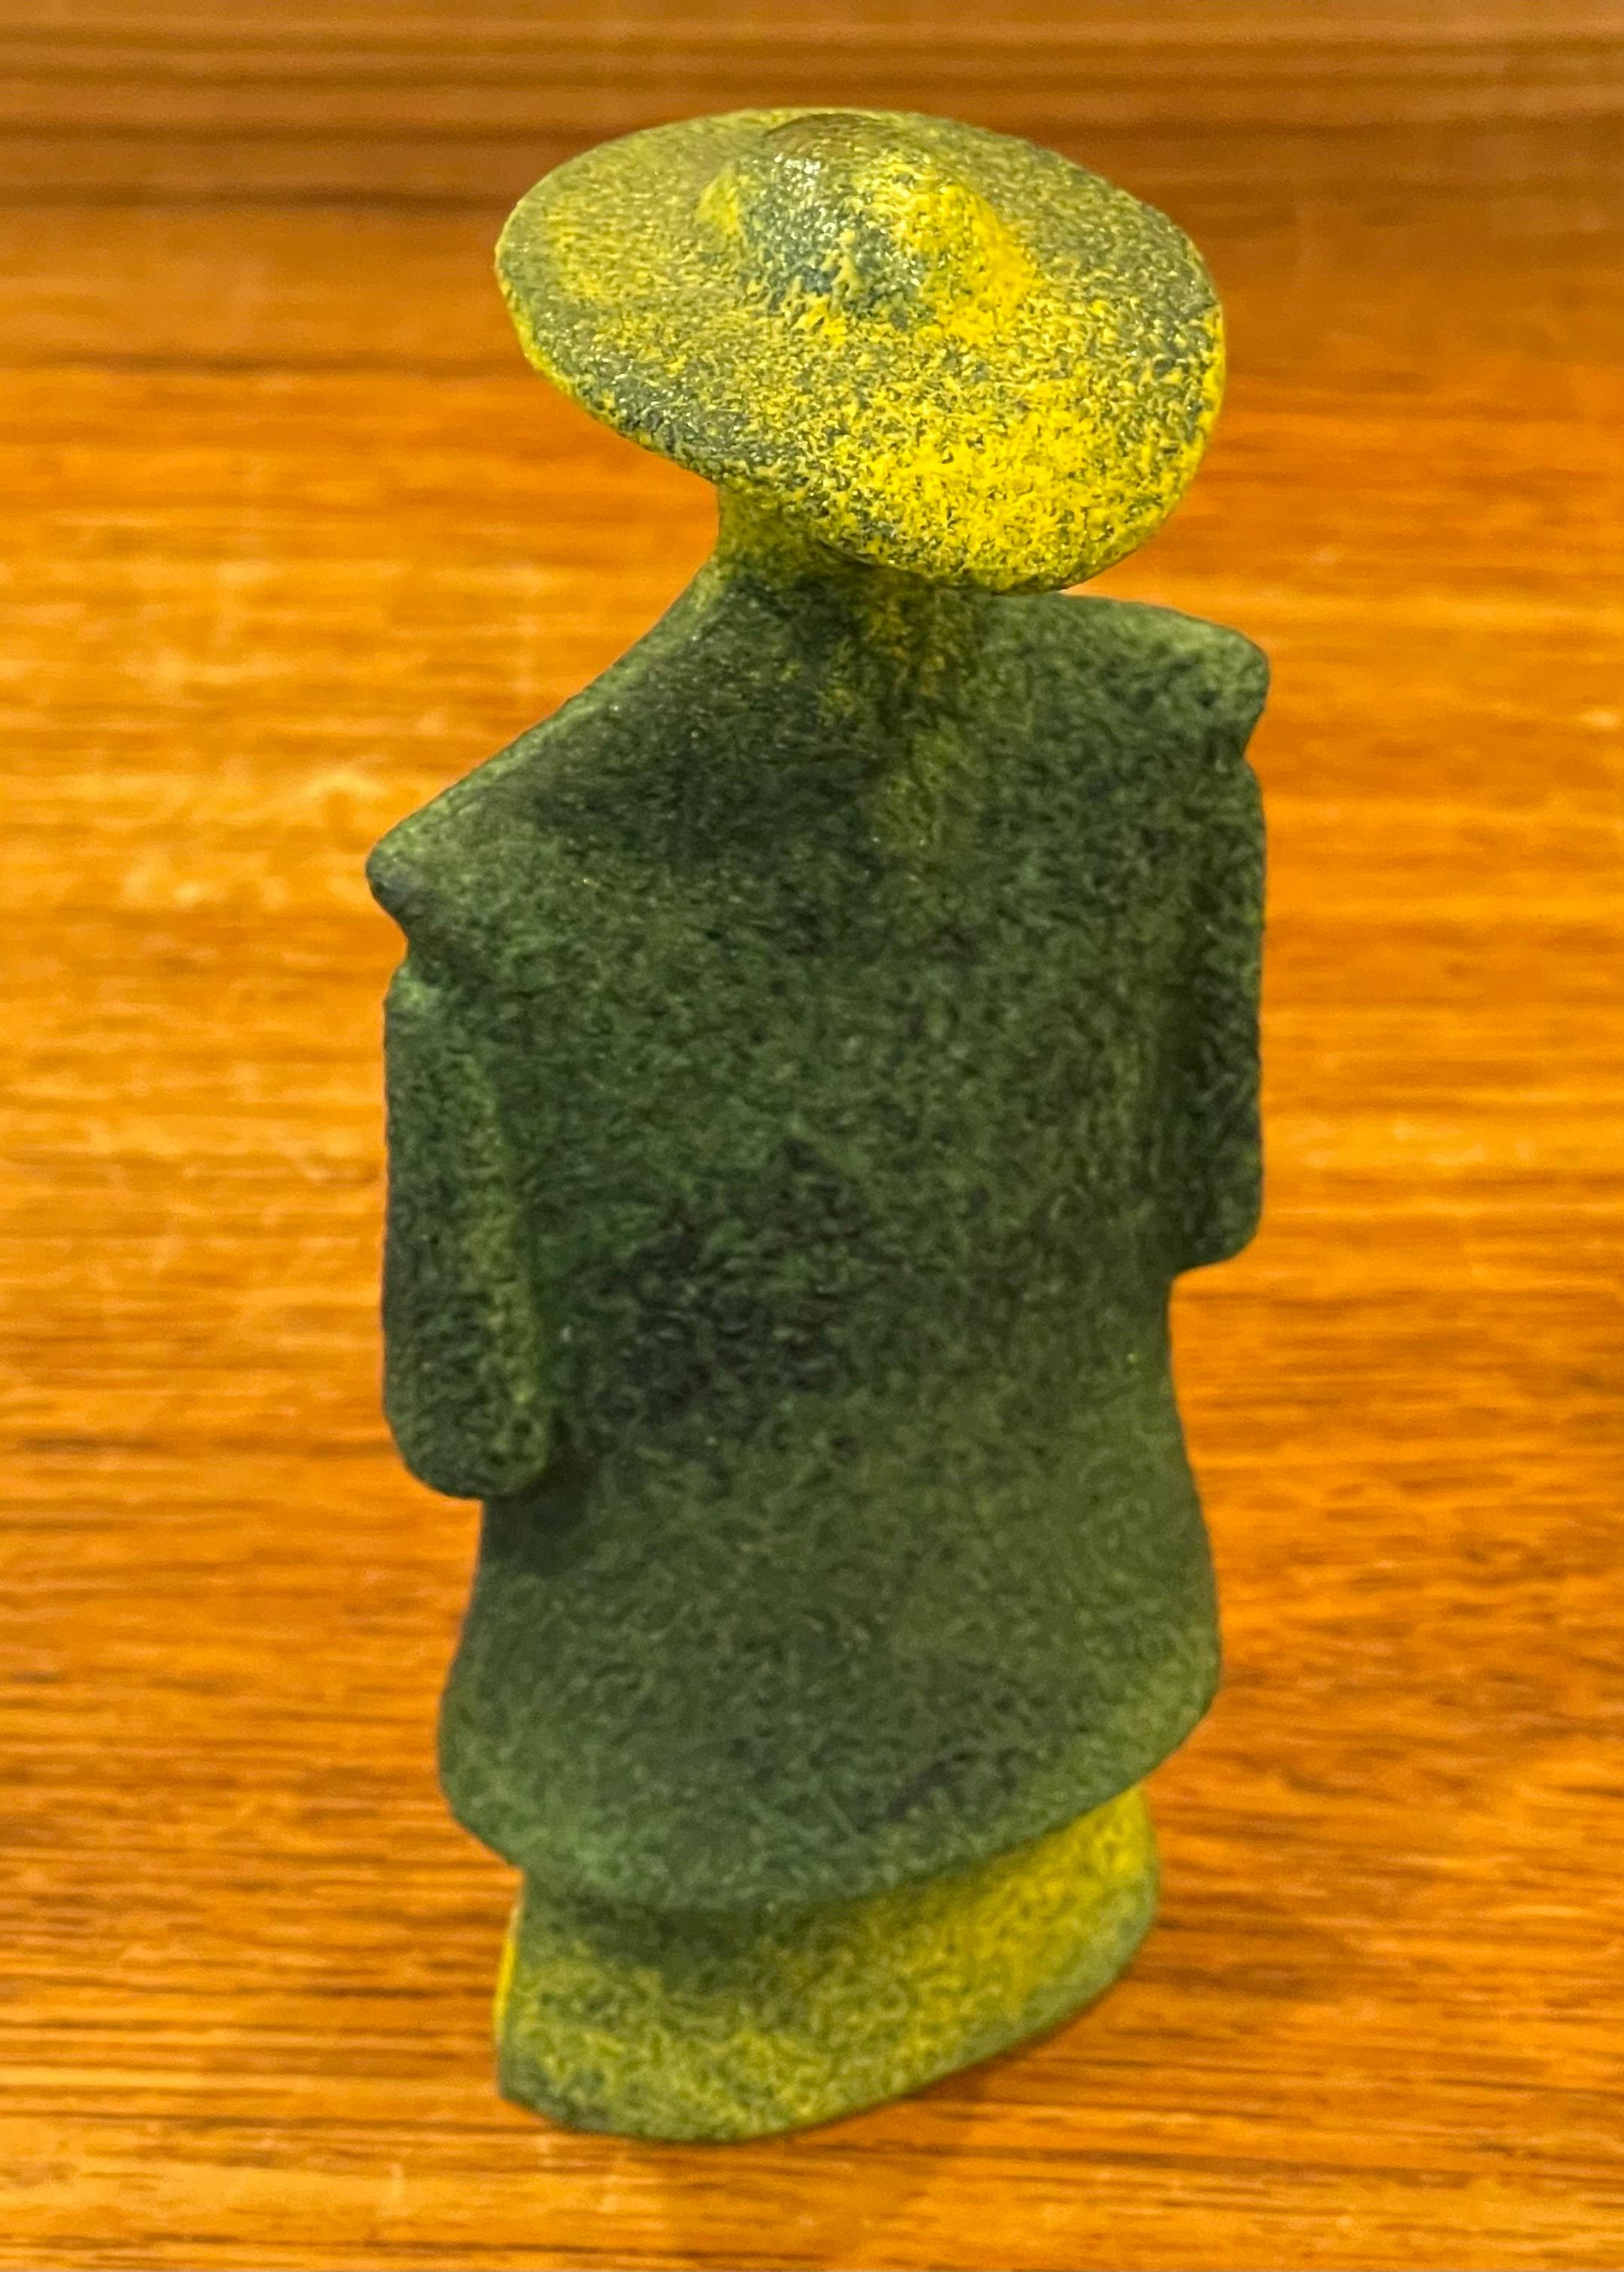 Poncho Green Art Glass Catwalk Sculpture by Kjell Engman for Kosta Boda Sweden For Sale 1